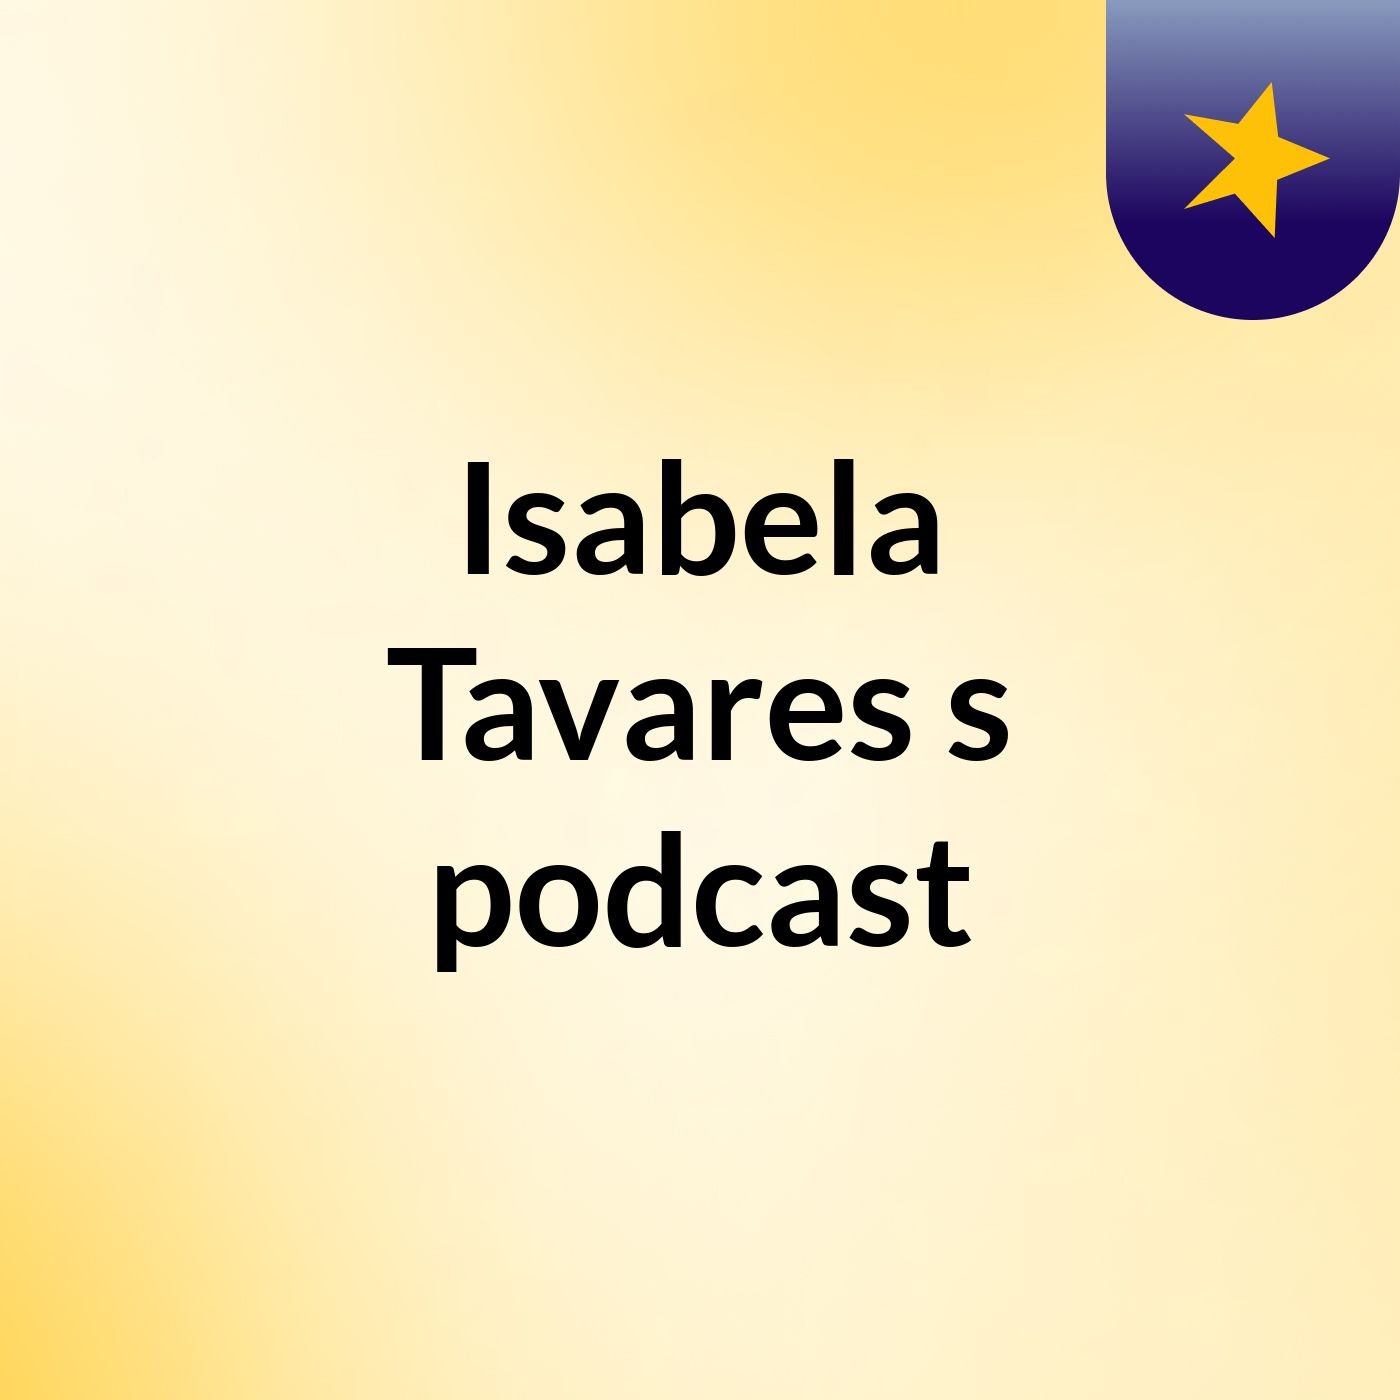 Isabela Tavares's podcast